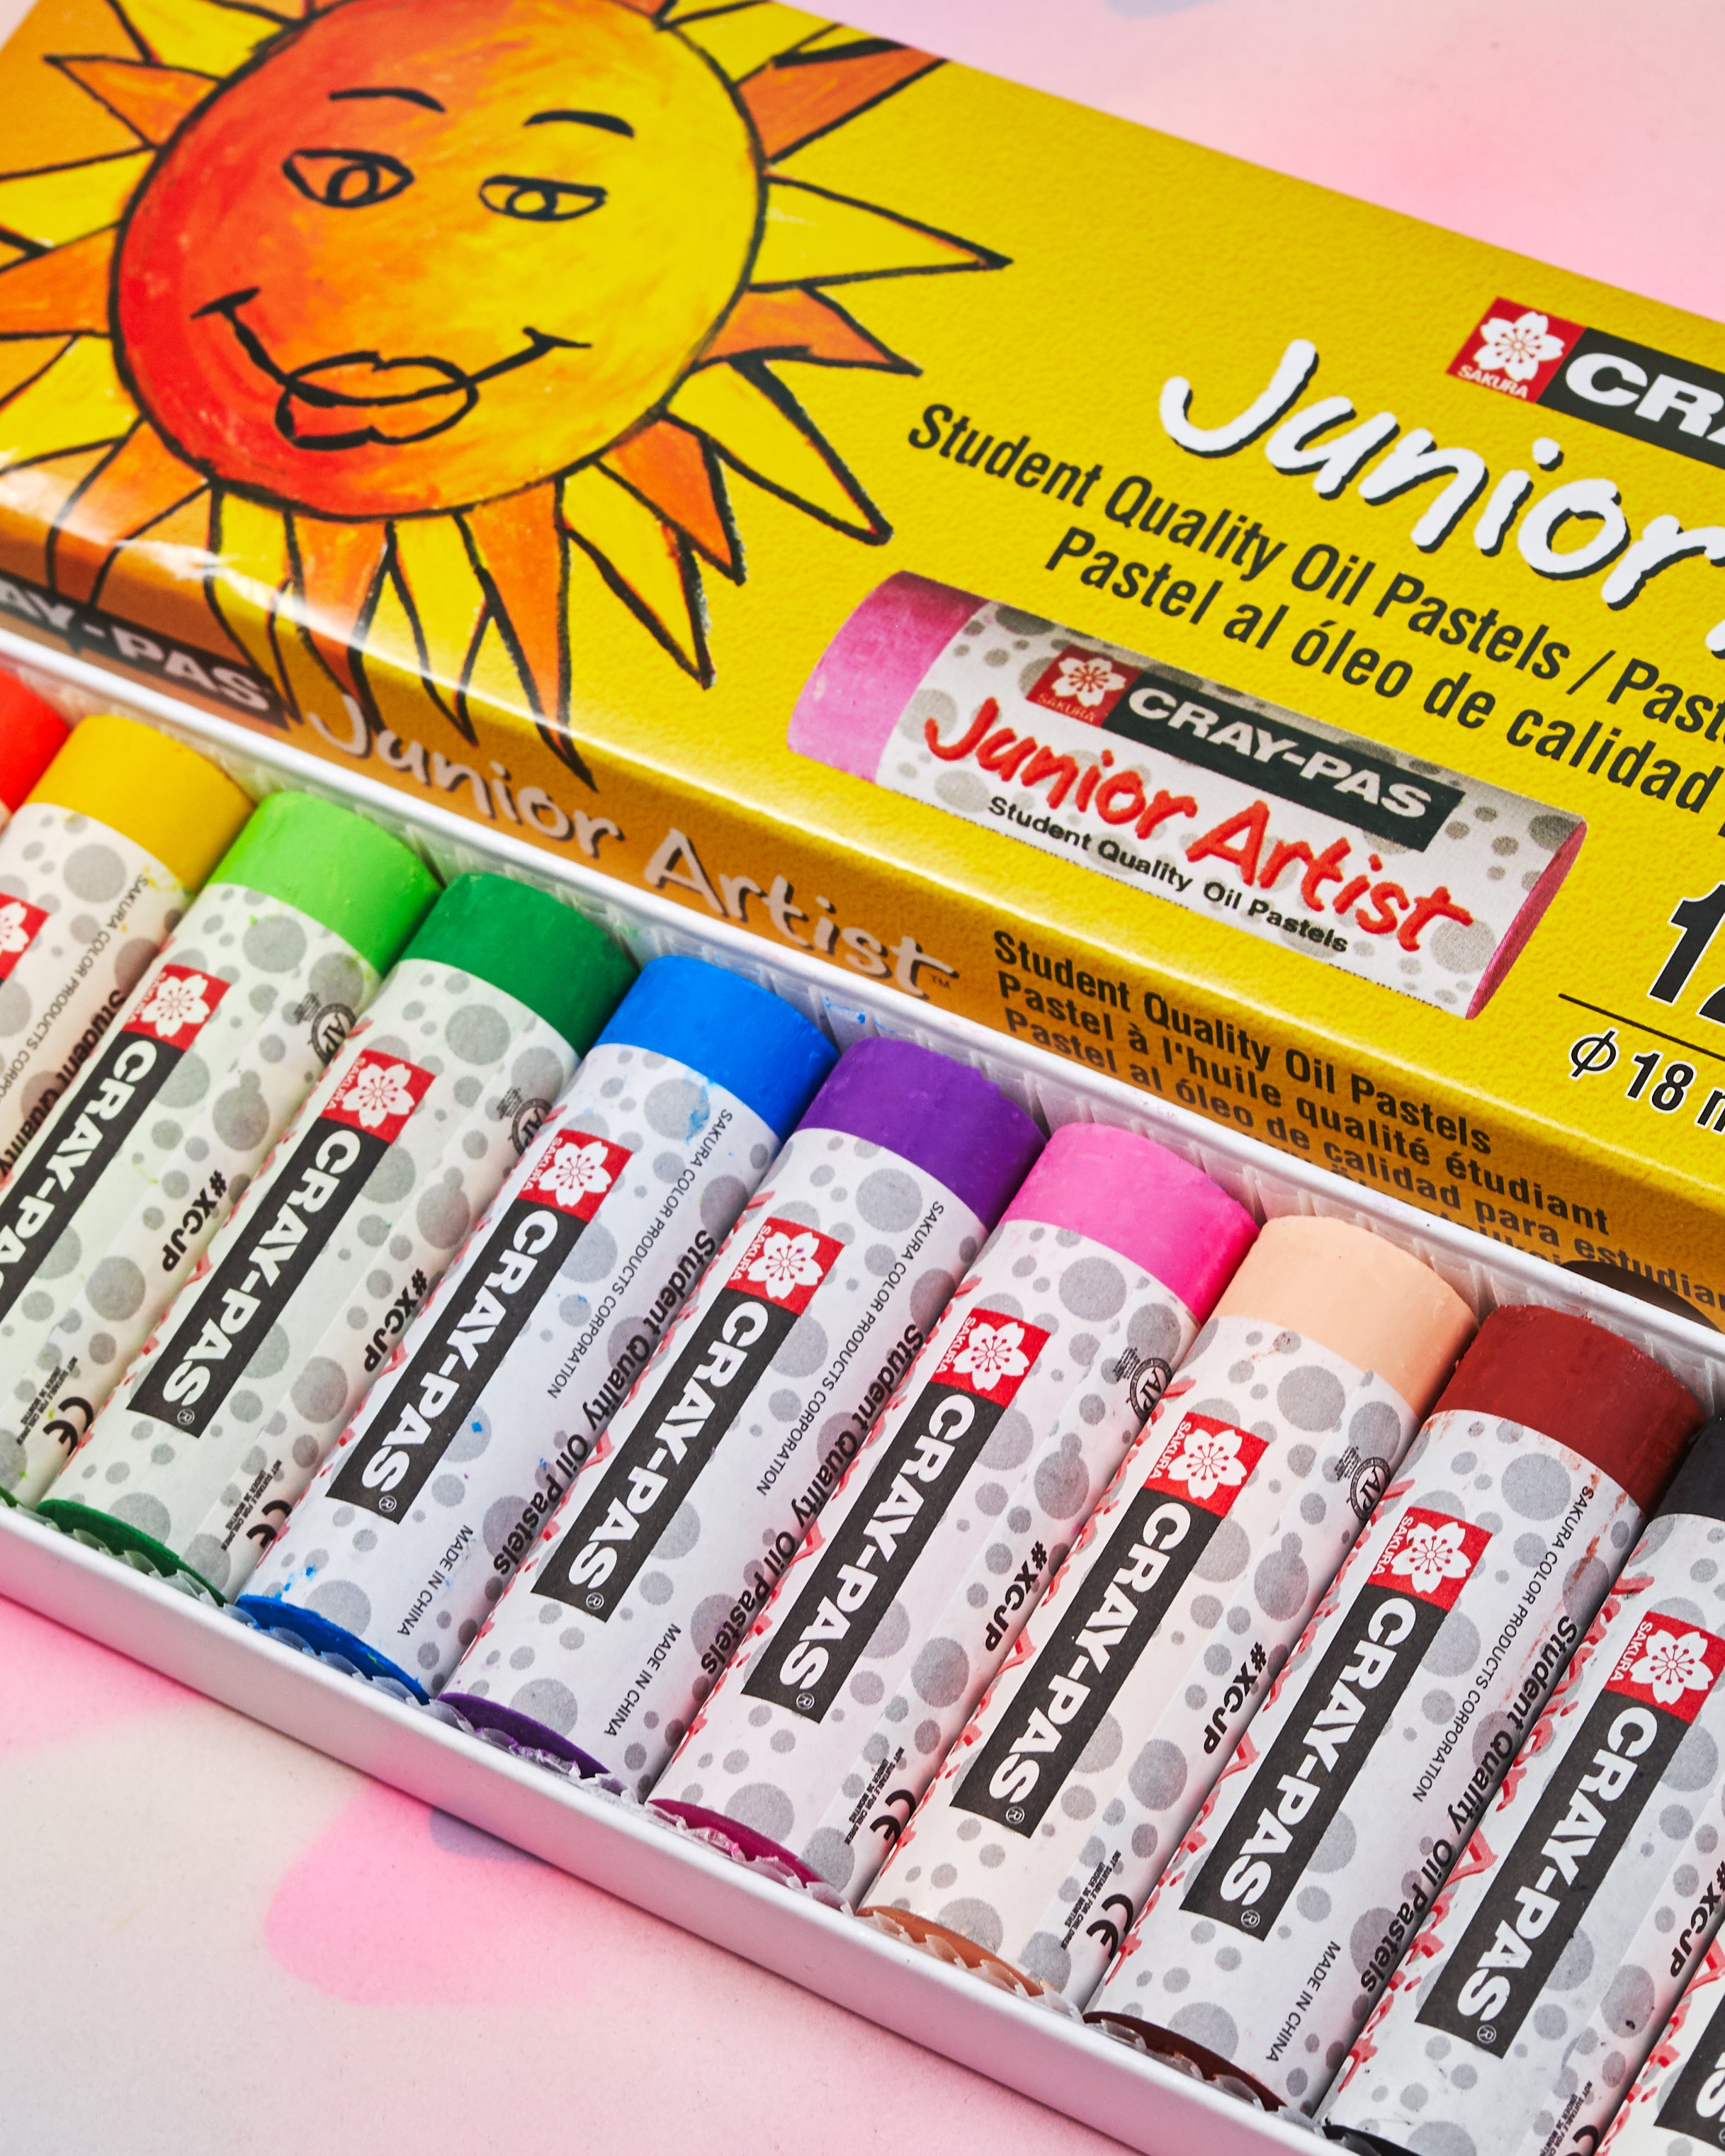 Sakura CrayPas Junior Artist Oil Pastel Sets